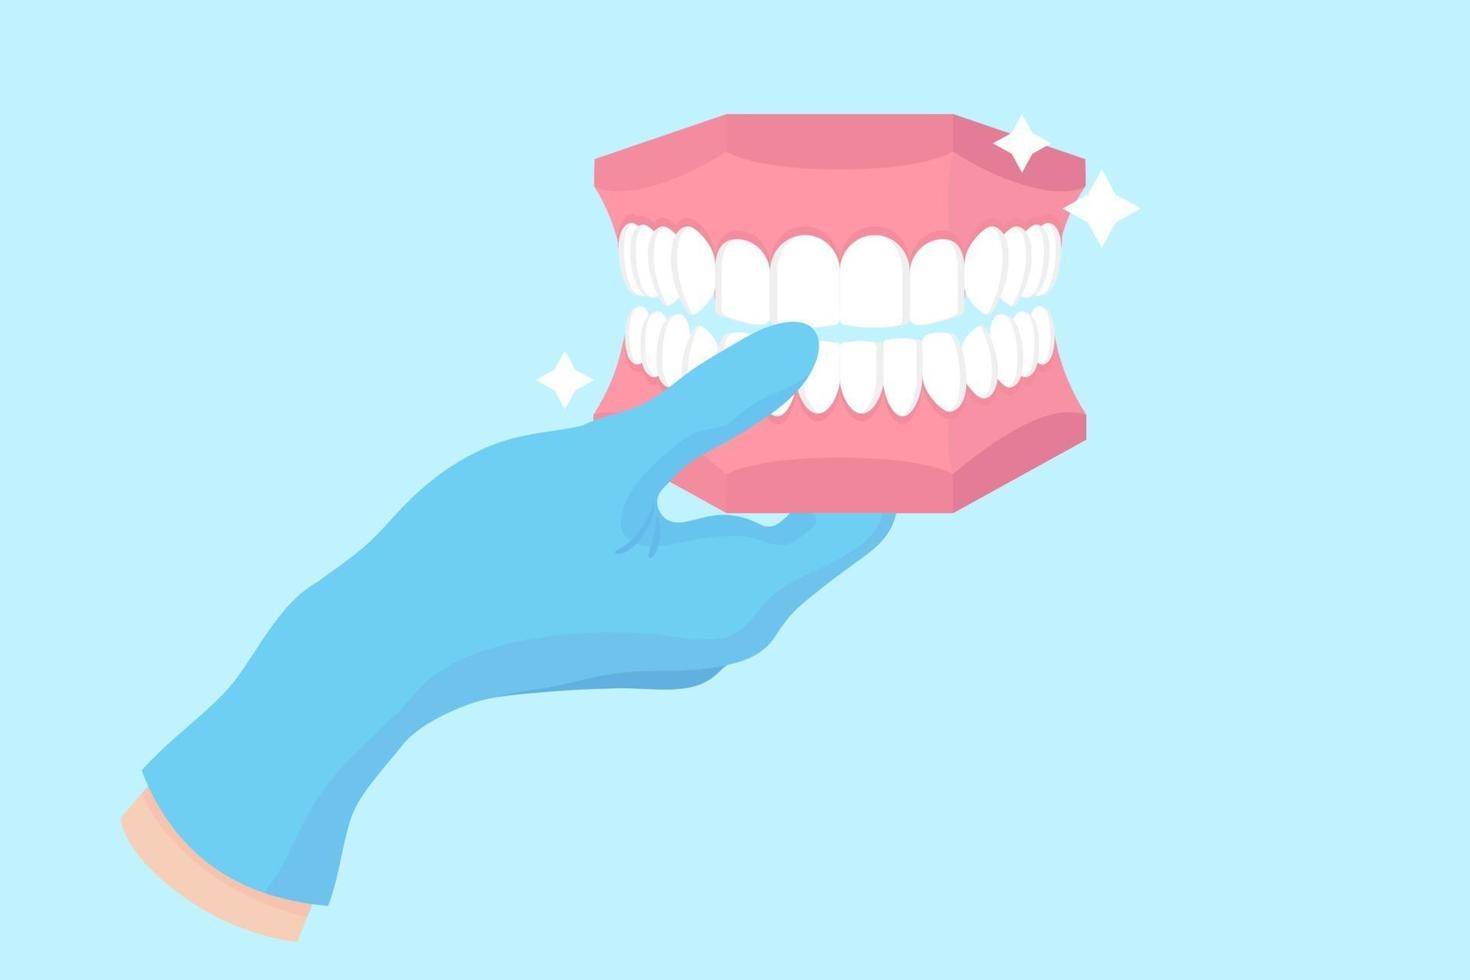 vektor tecknad hand av en tandläkare i en blå handske som håller en dental fantom eller plast modell av mänskliga käken.